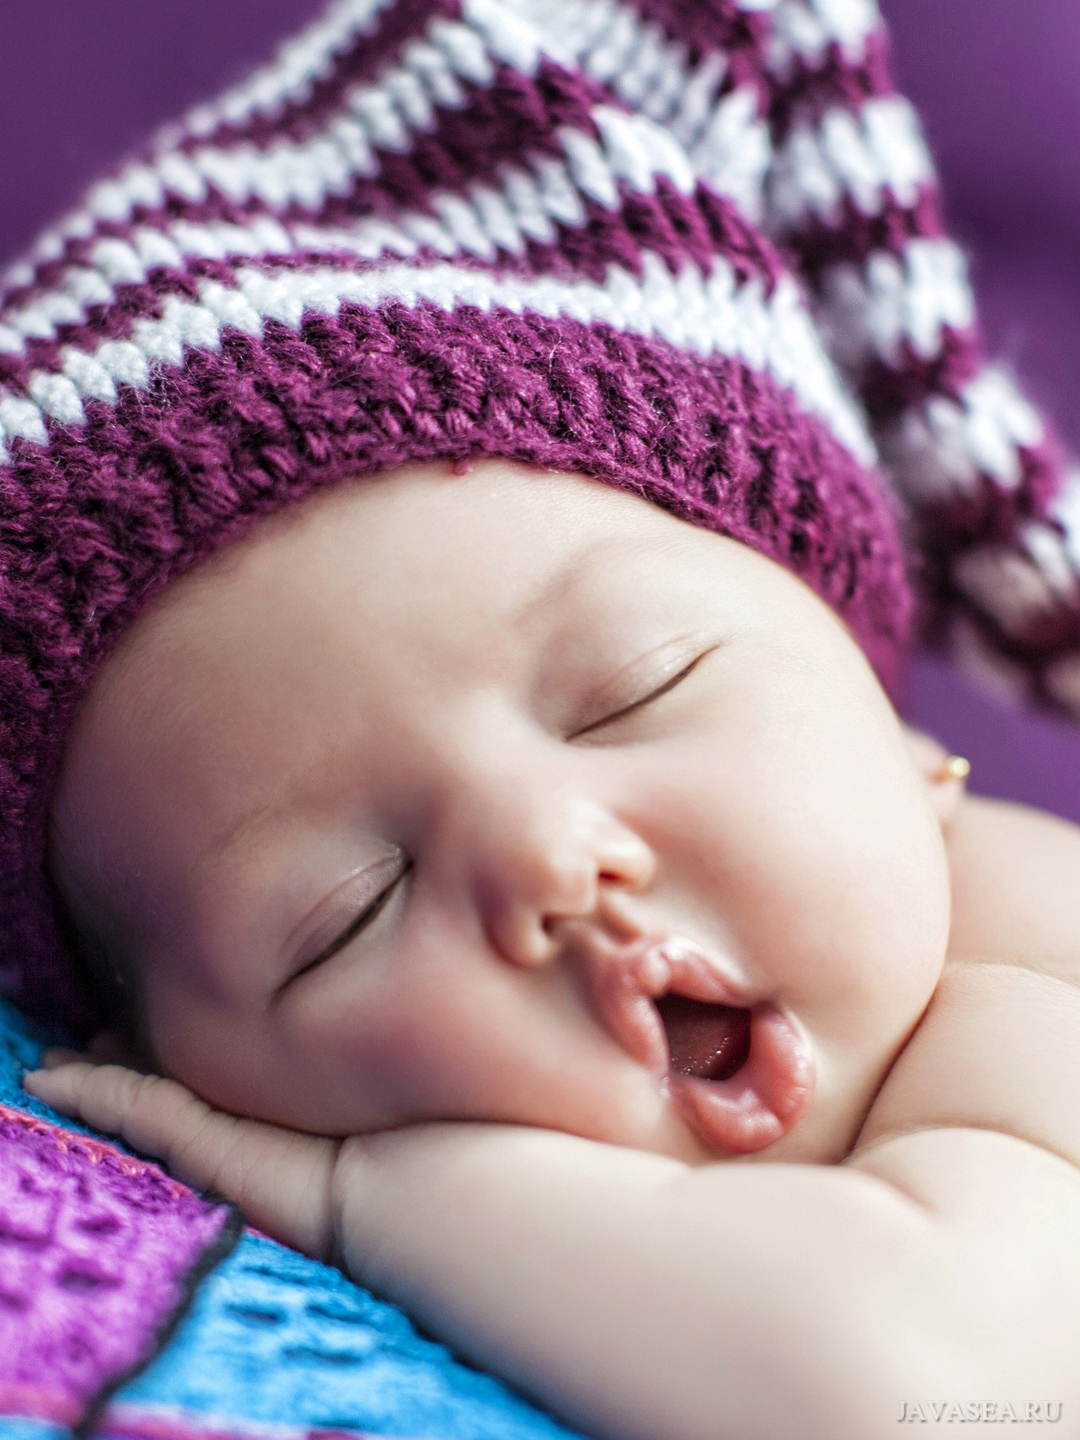 Фотоальбом «Спящий малыш» с кармашками на 300 фото 10х15 см